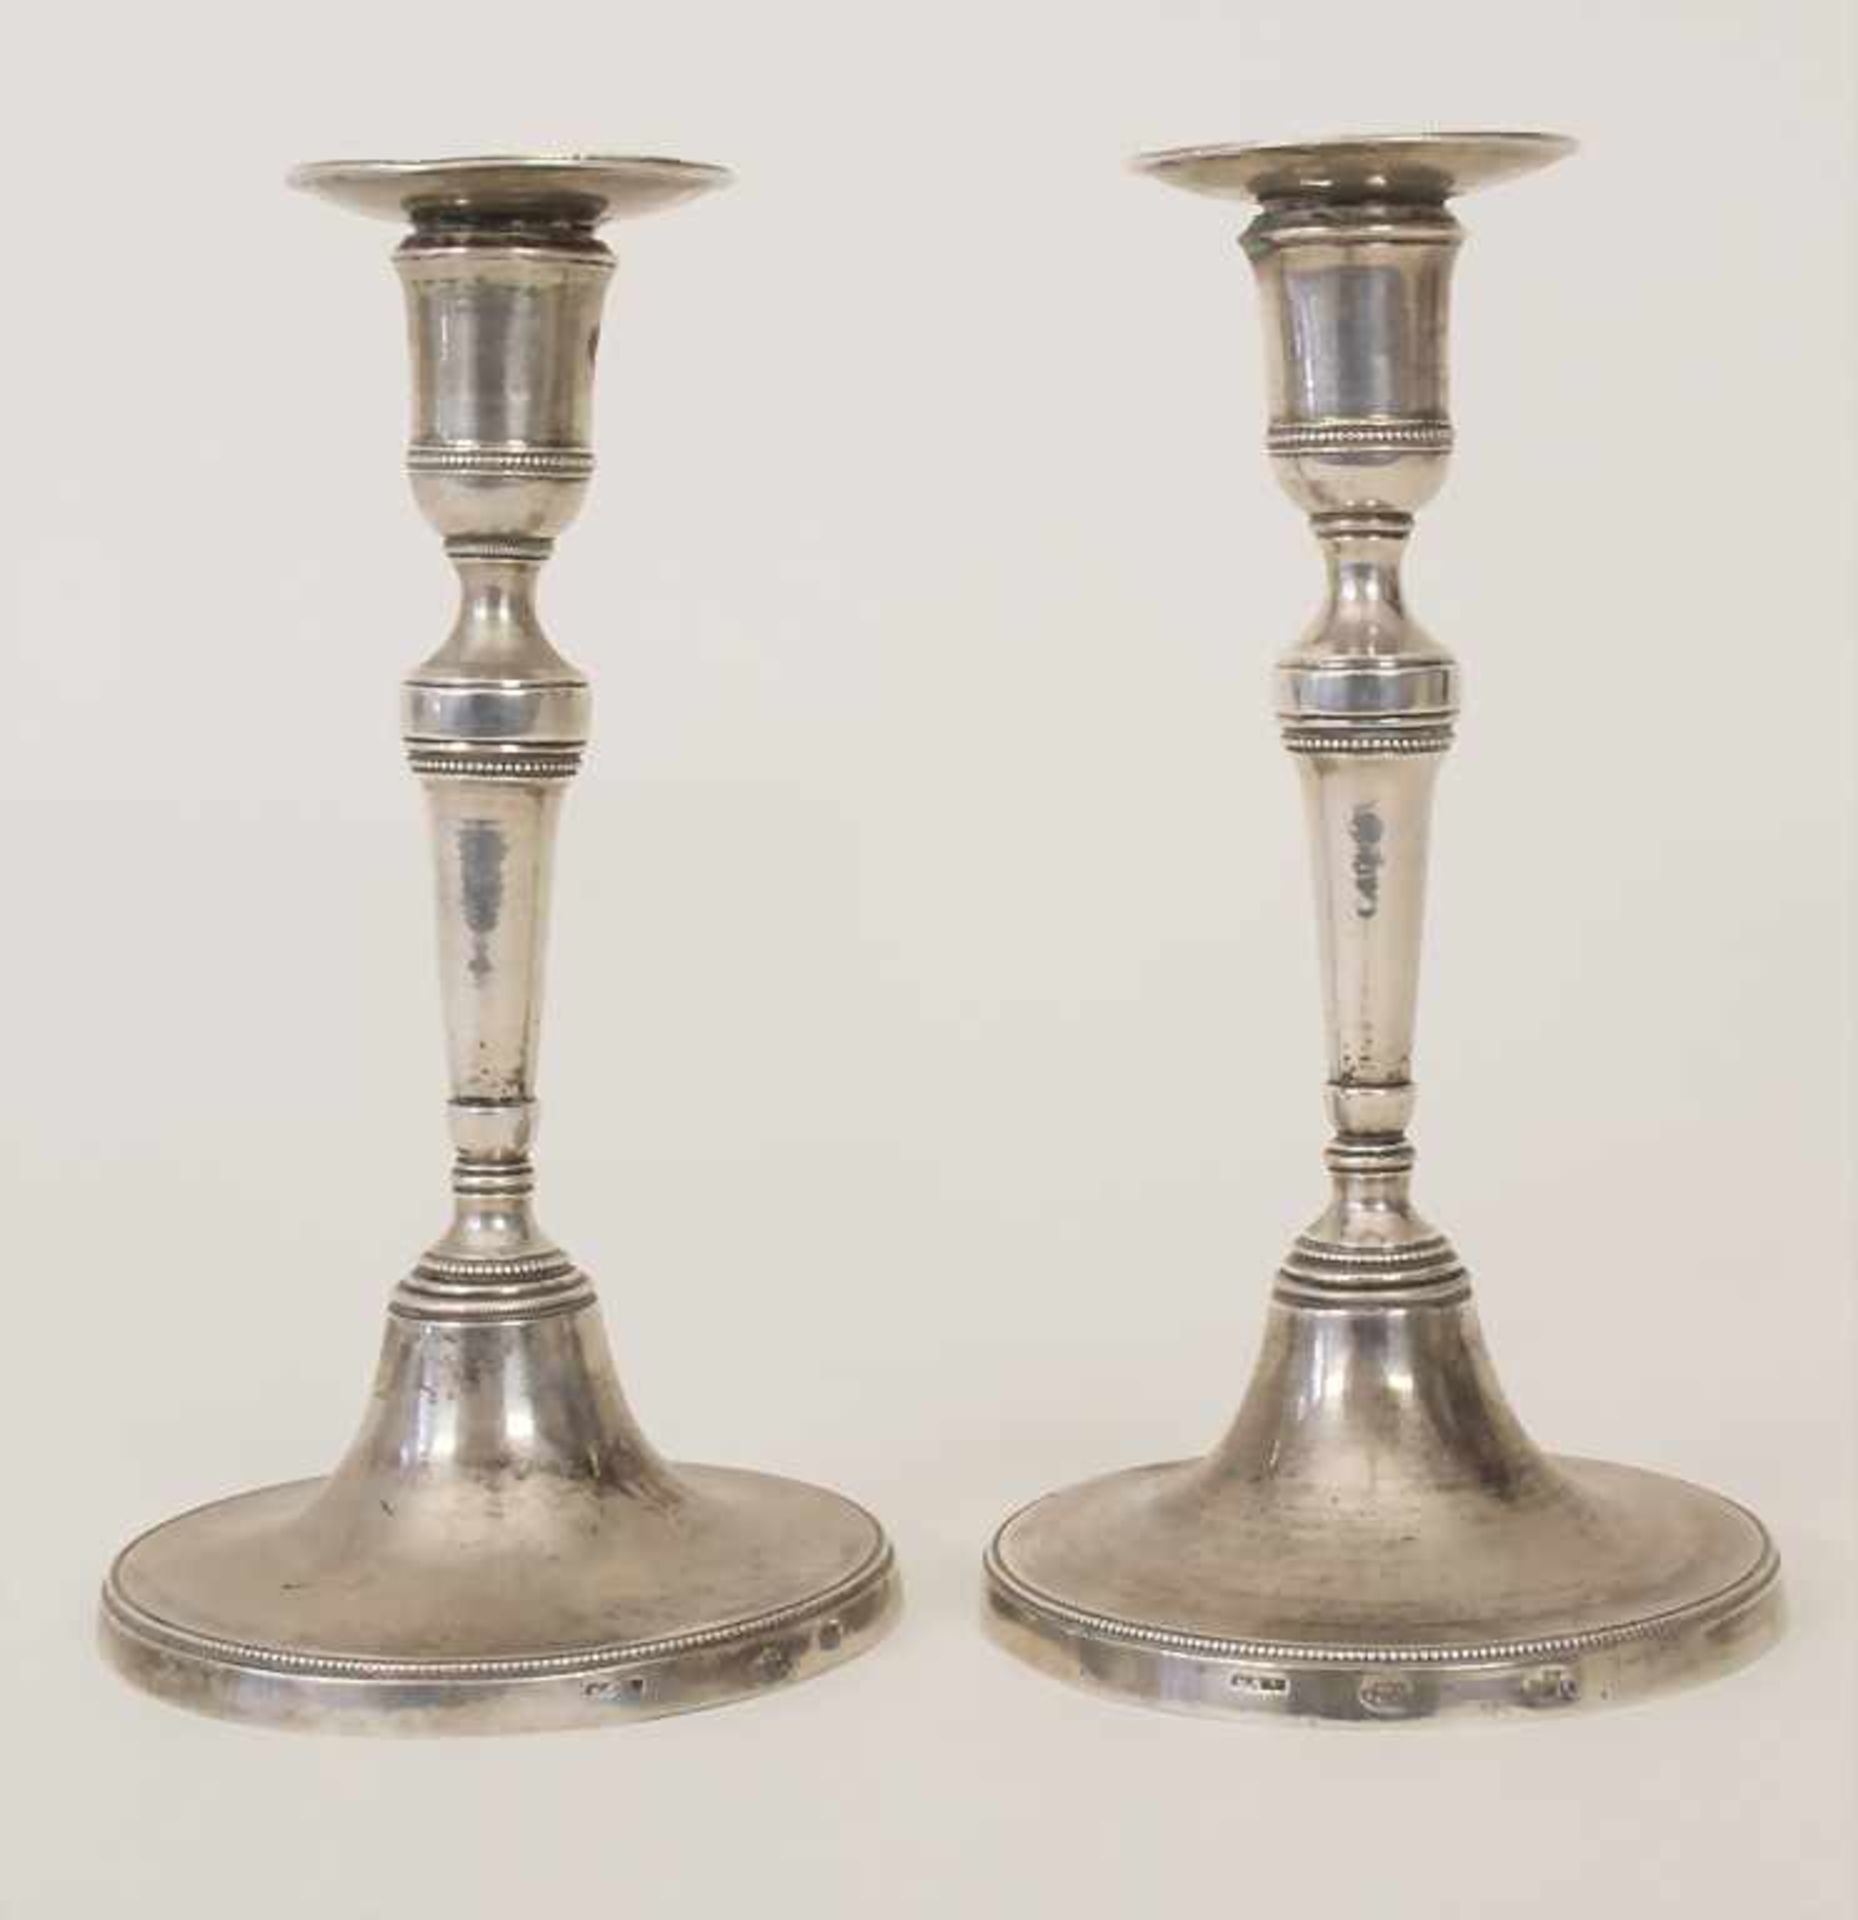 Paar Louis XVI Leuchter / A pair of Louis-seize silver candlesticks, Noia, um 1780Material: Silber